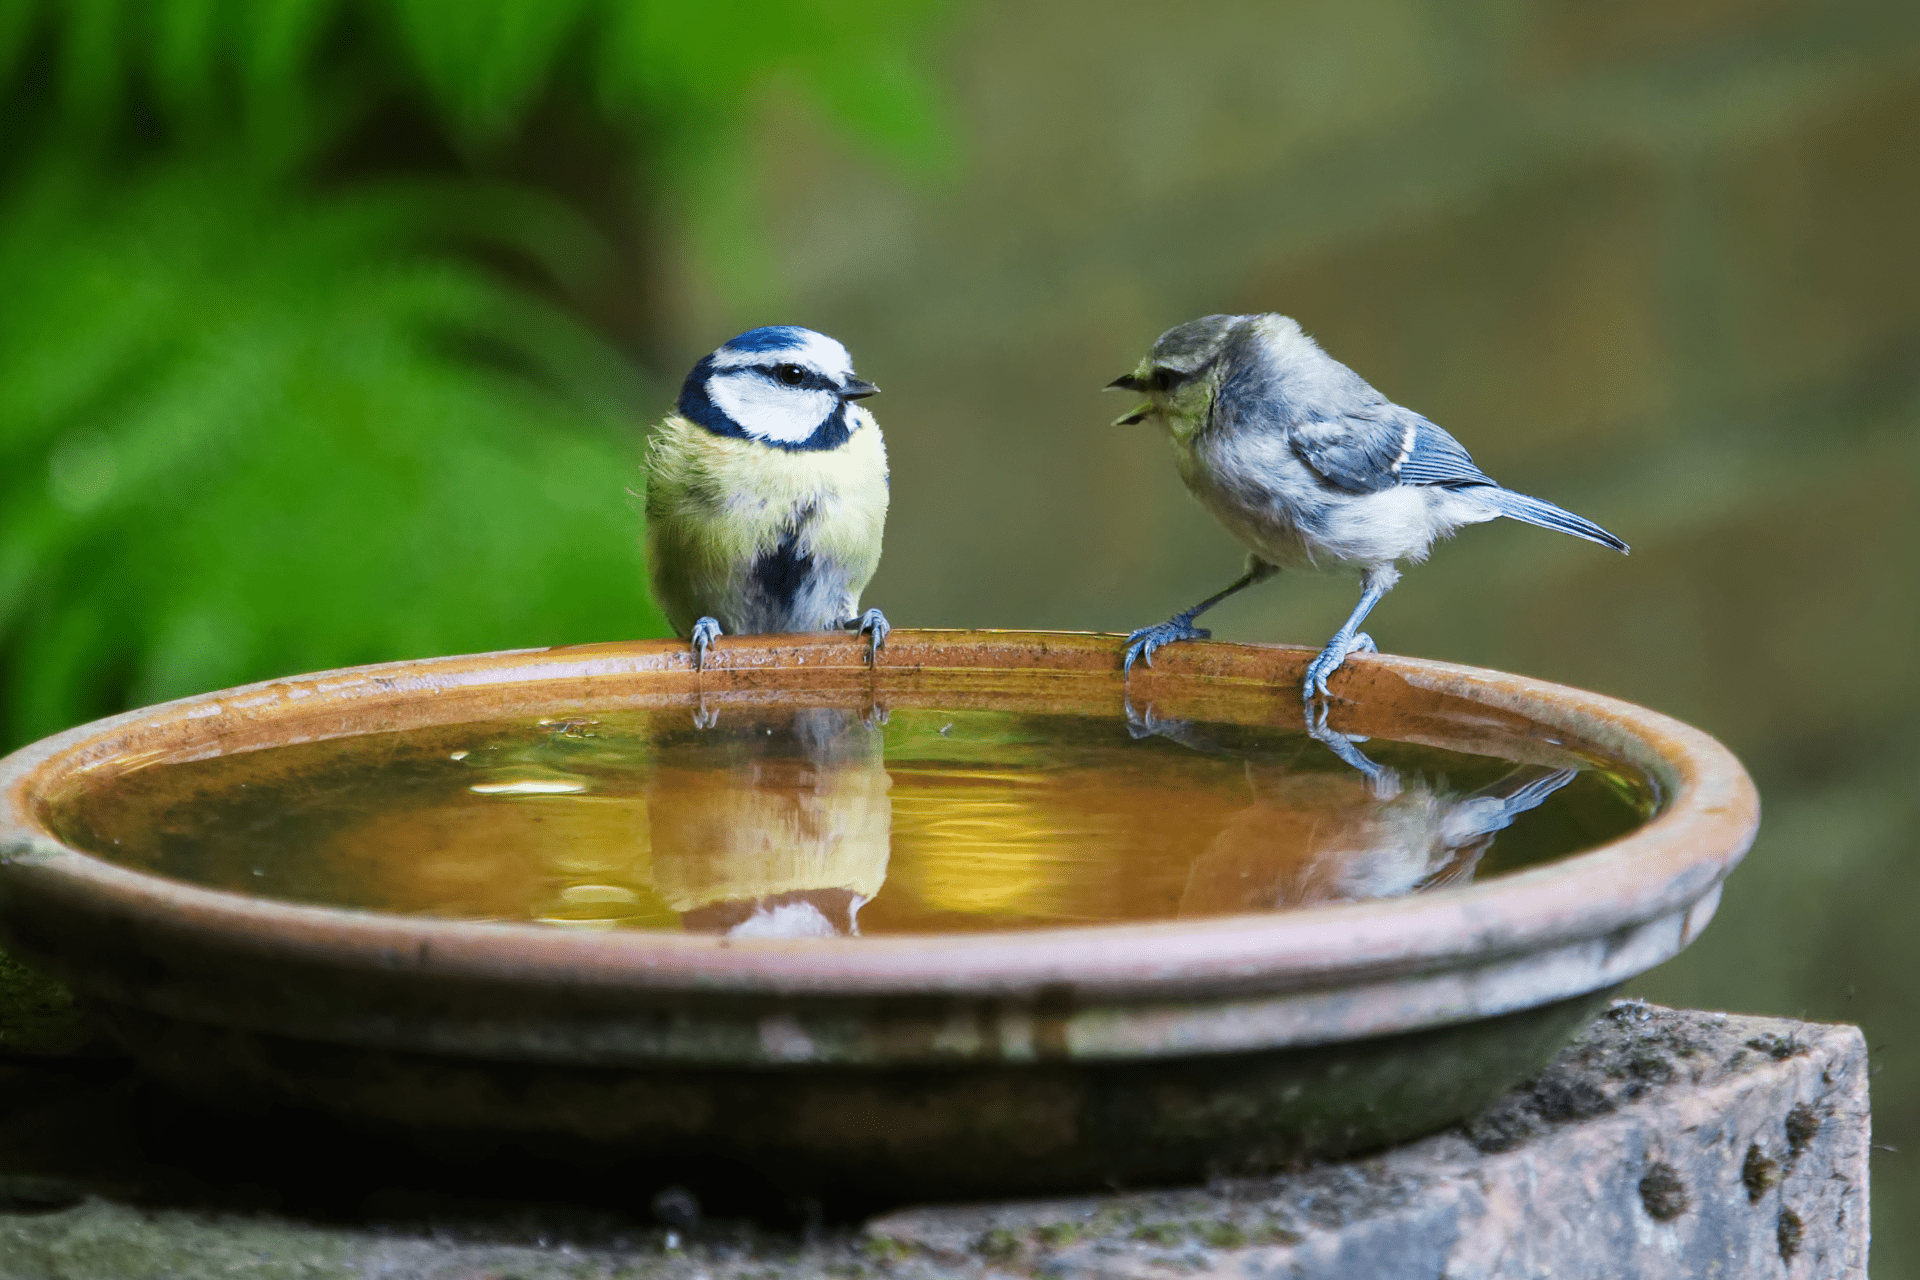 Two birds on a birdbath